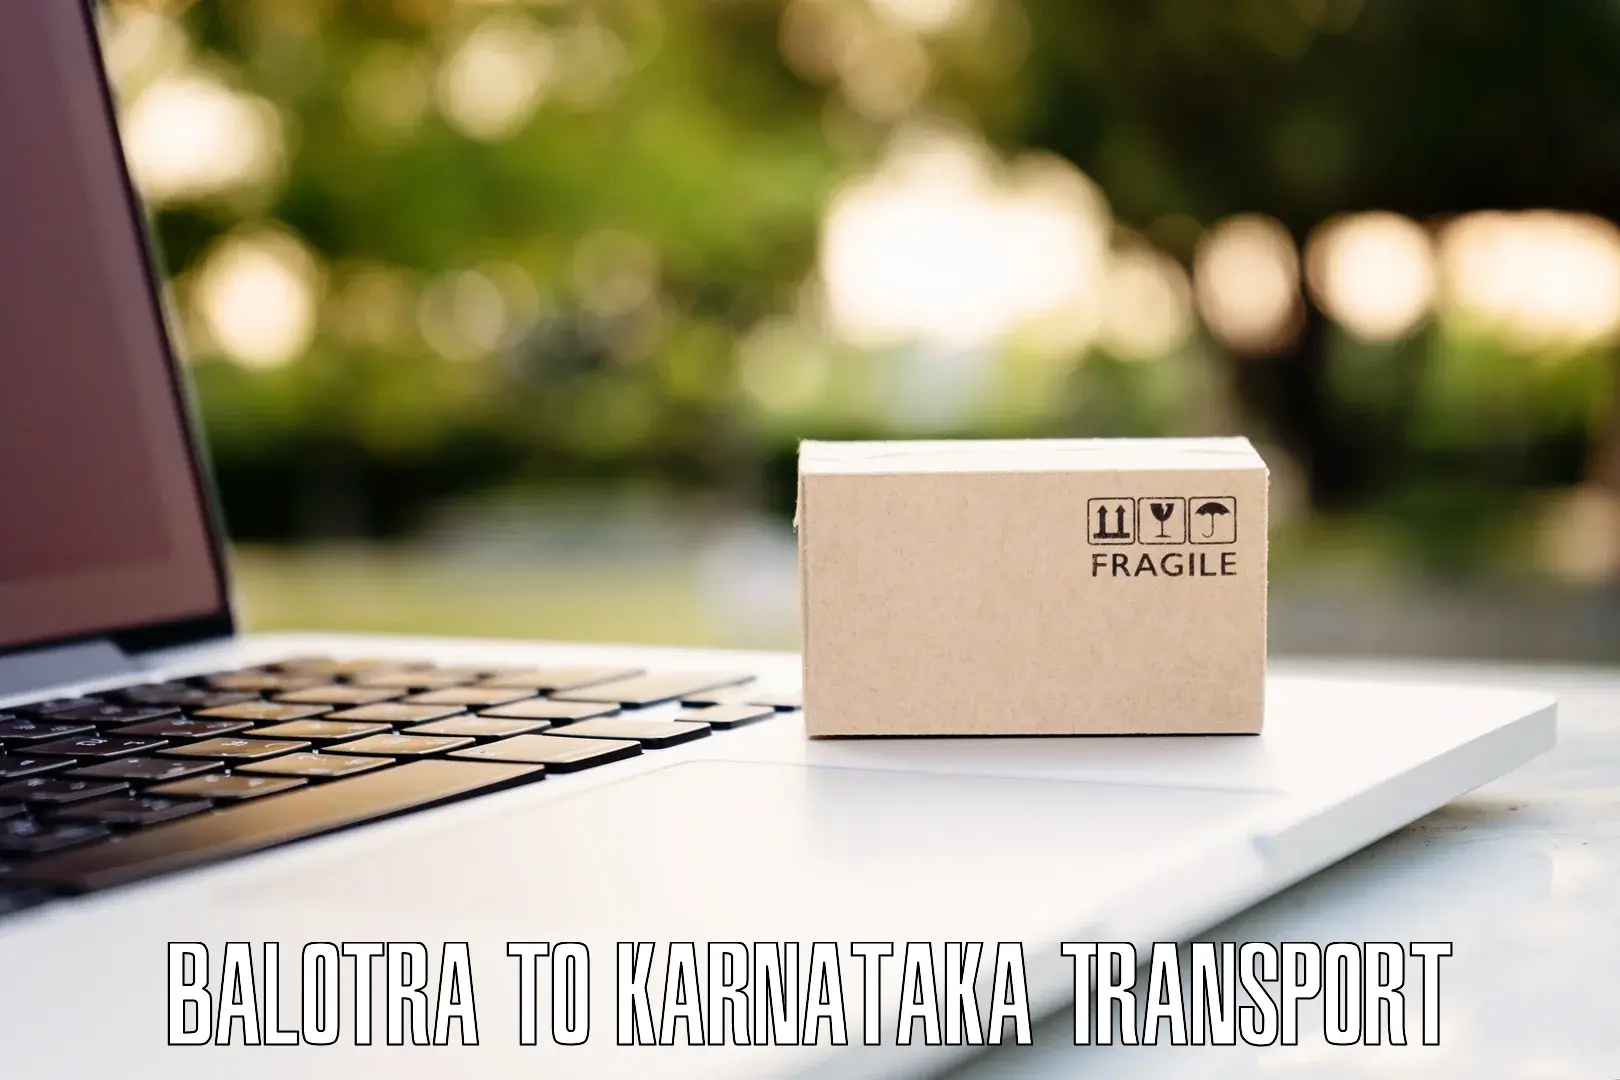 Intercity transport Balotra to Karnataka